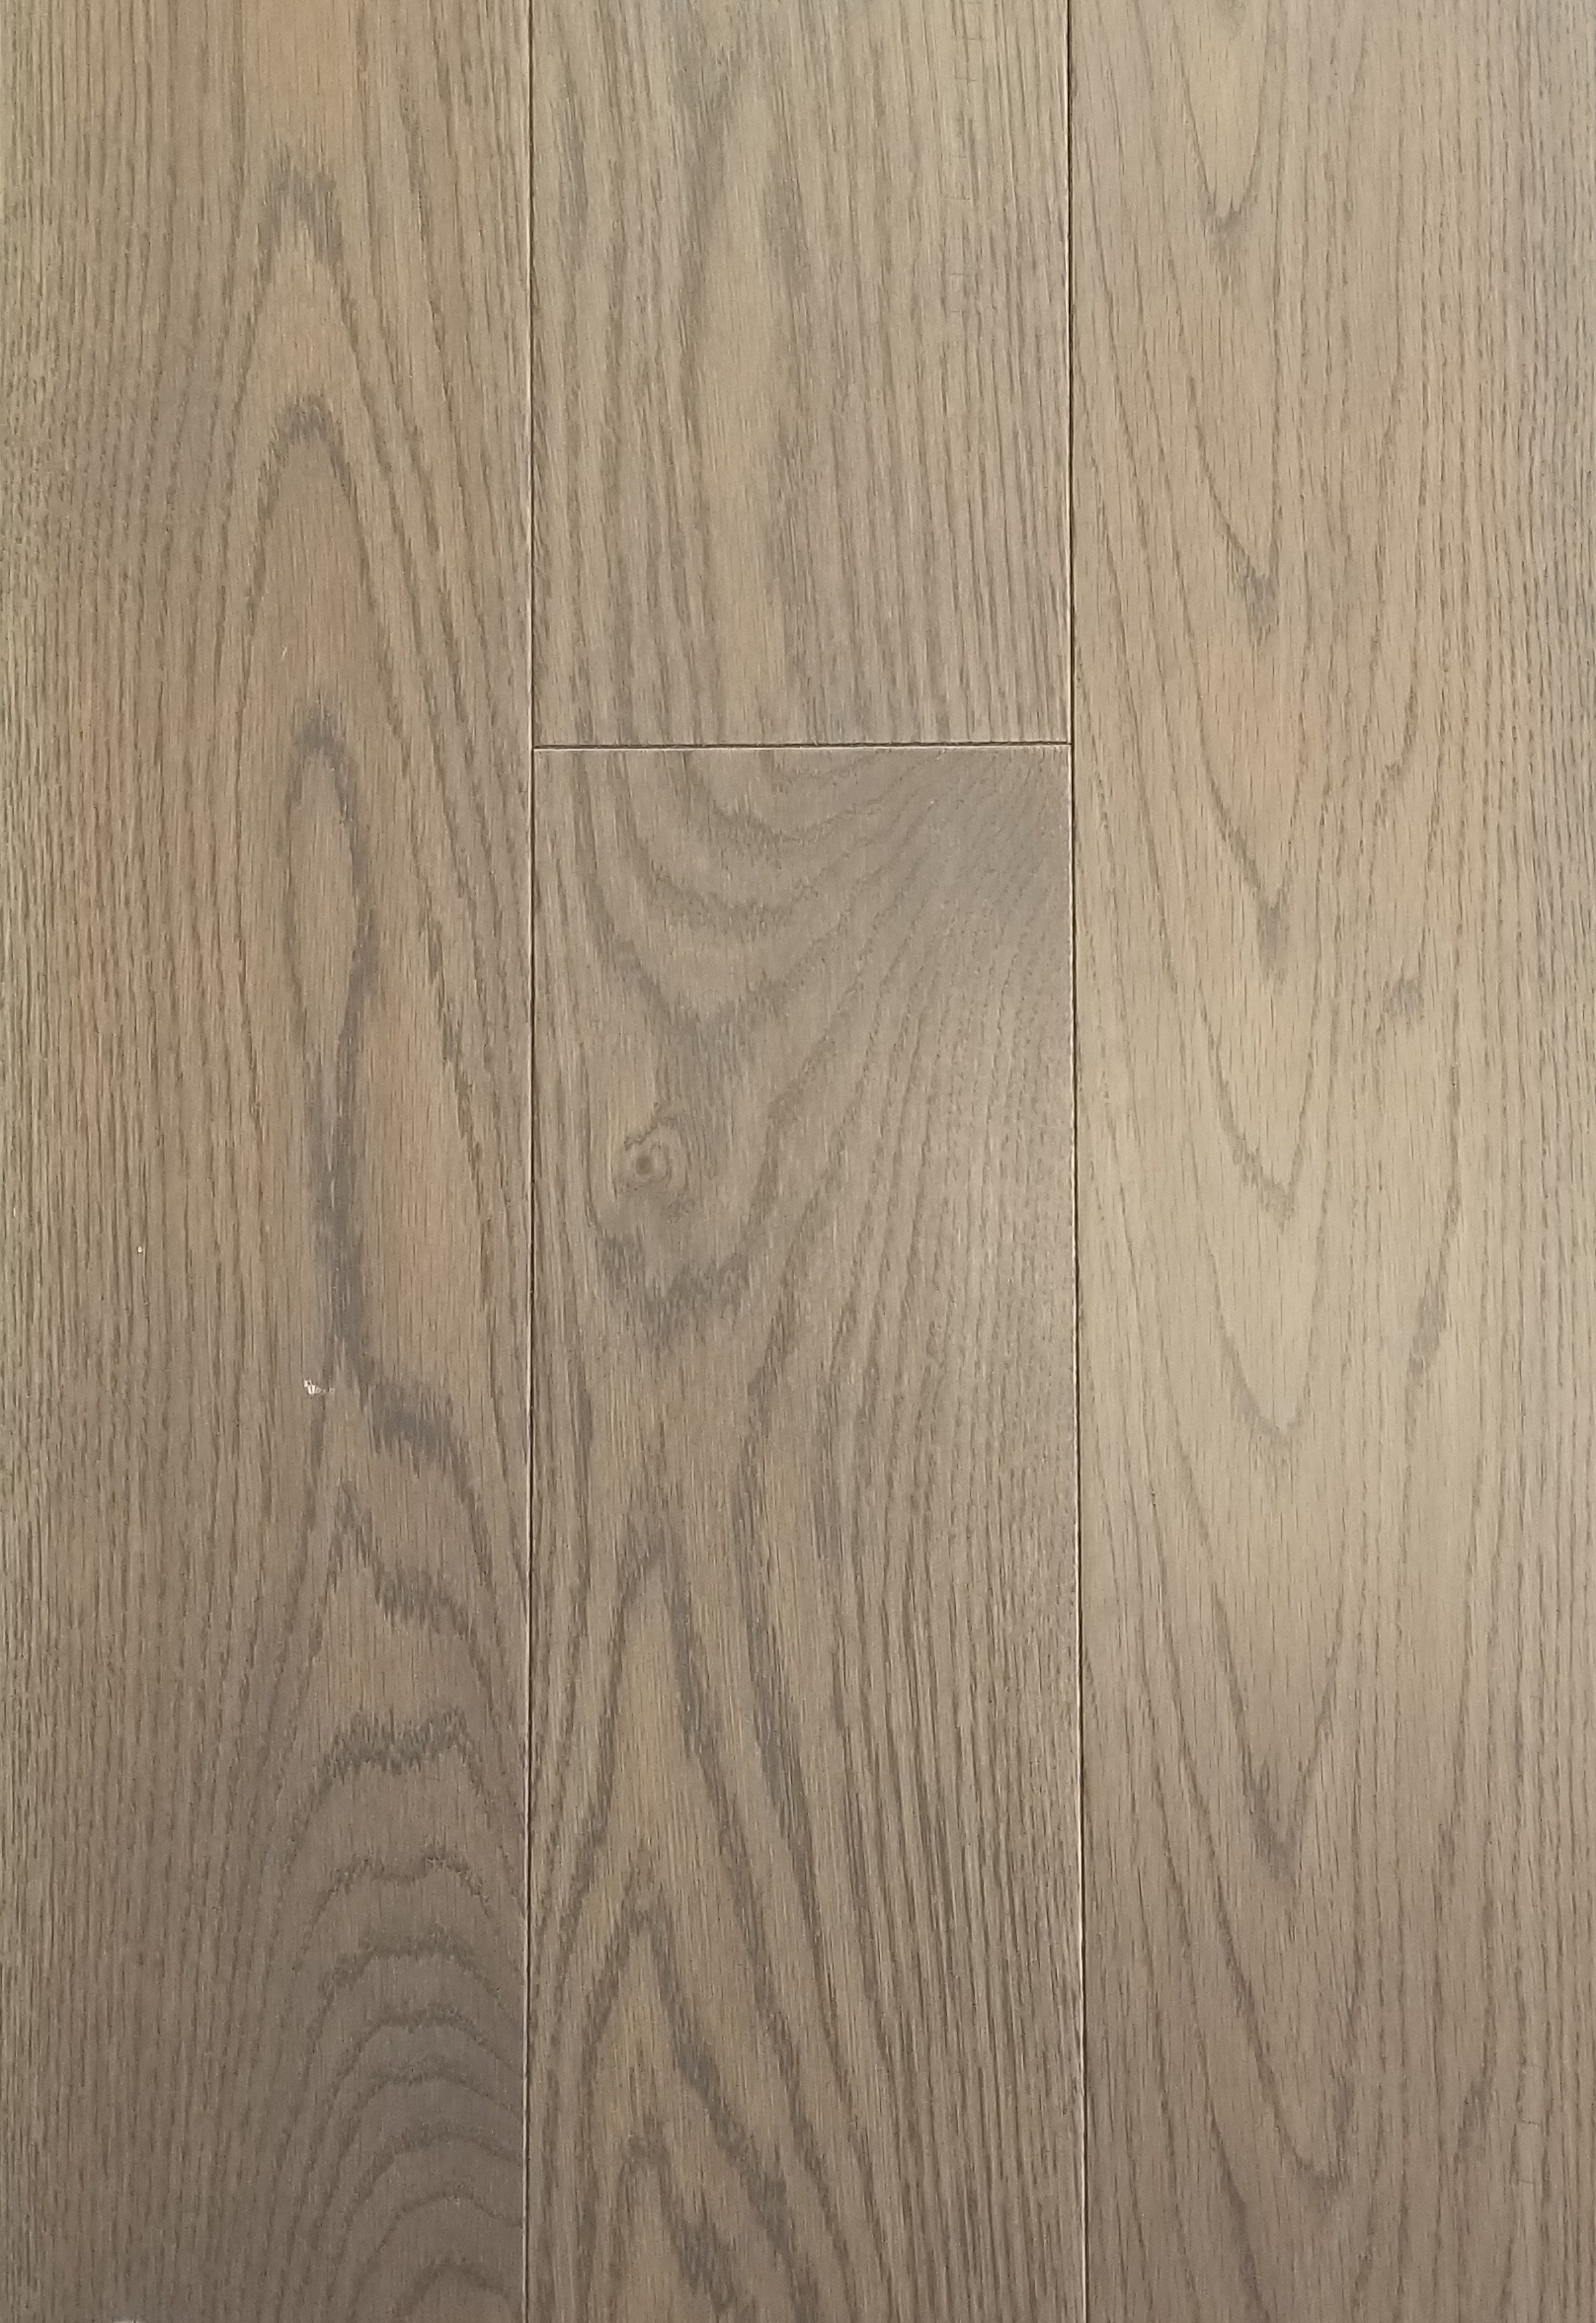 Hardwood Flooring Engineered, Driftwood Hardwood Floors